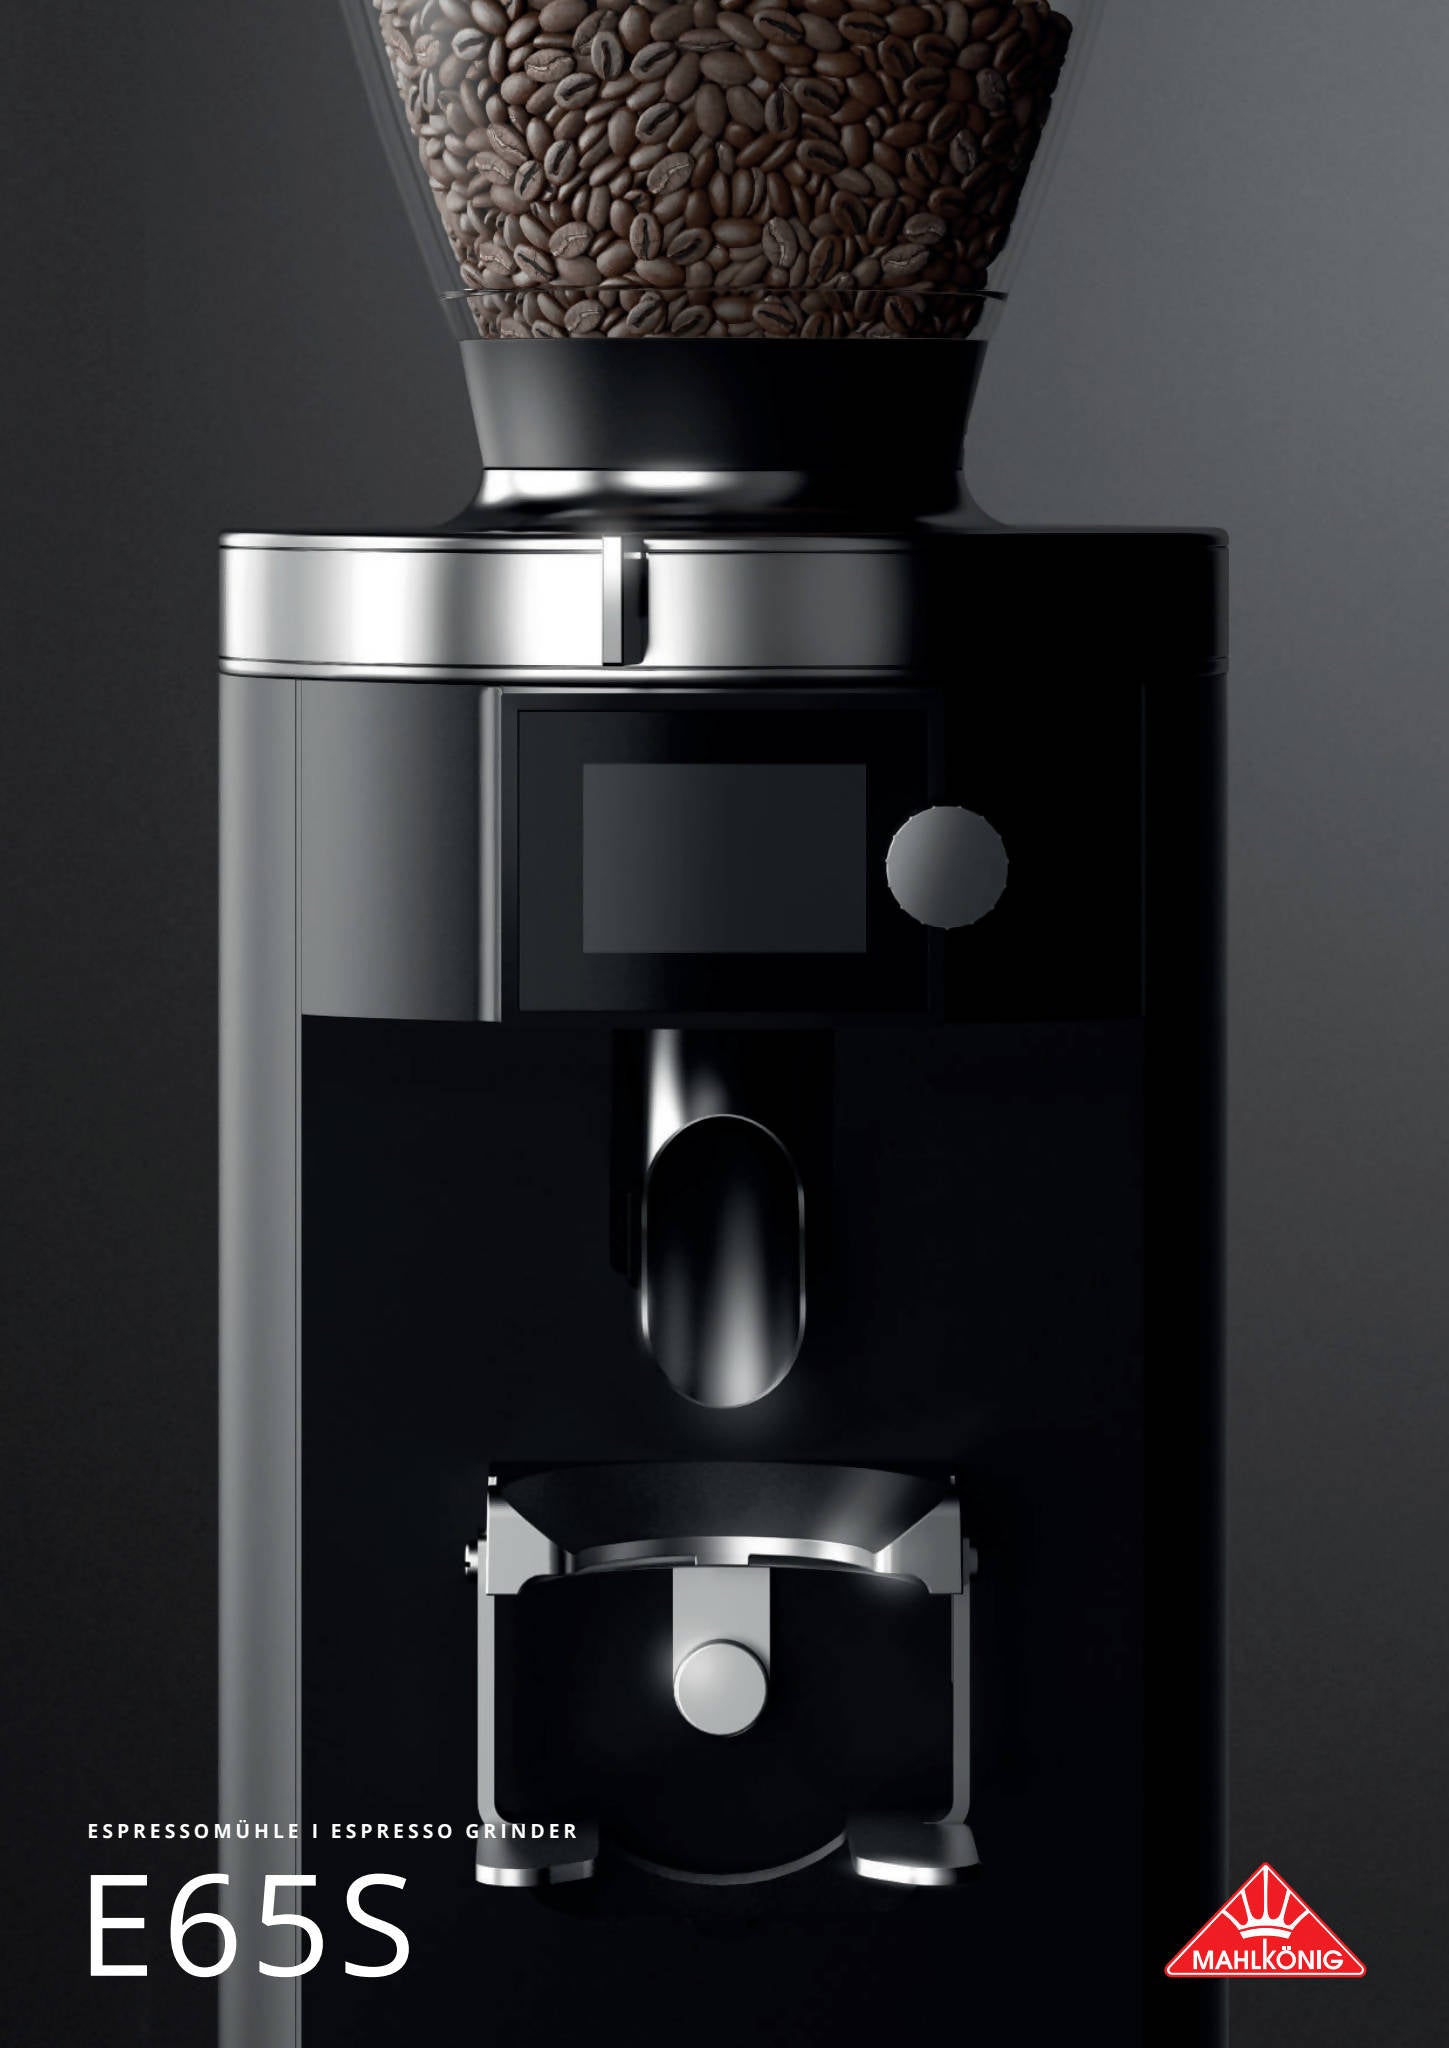 Ditting KFA1403 Industrial Coffee Grinder